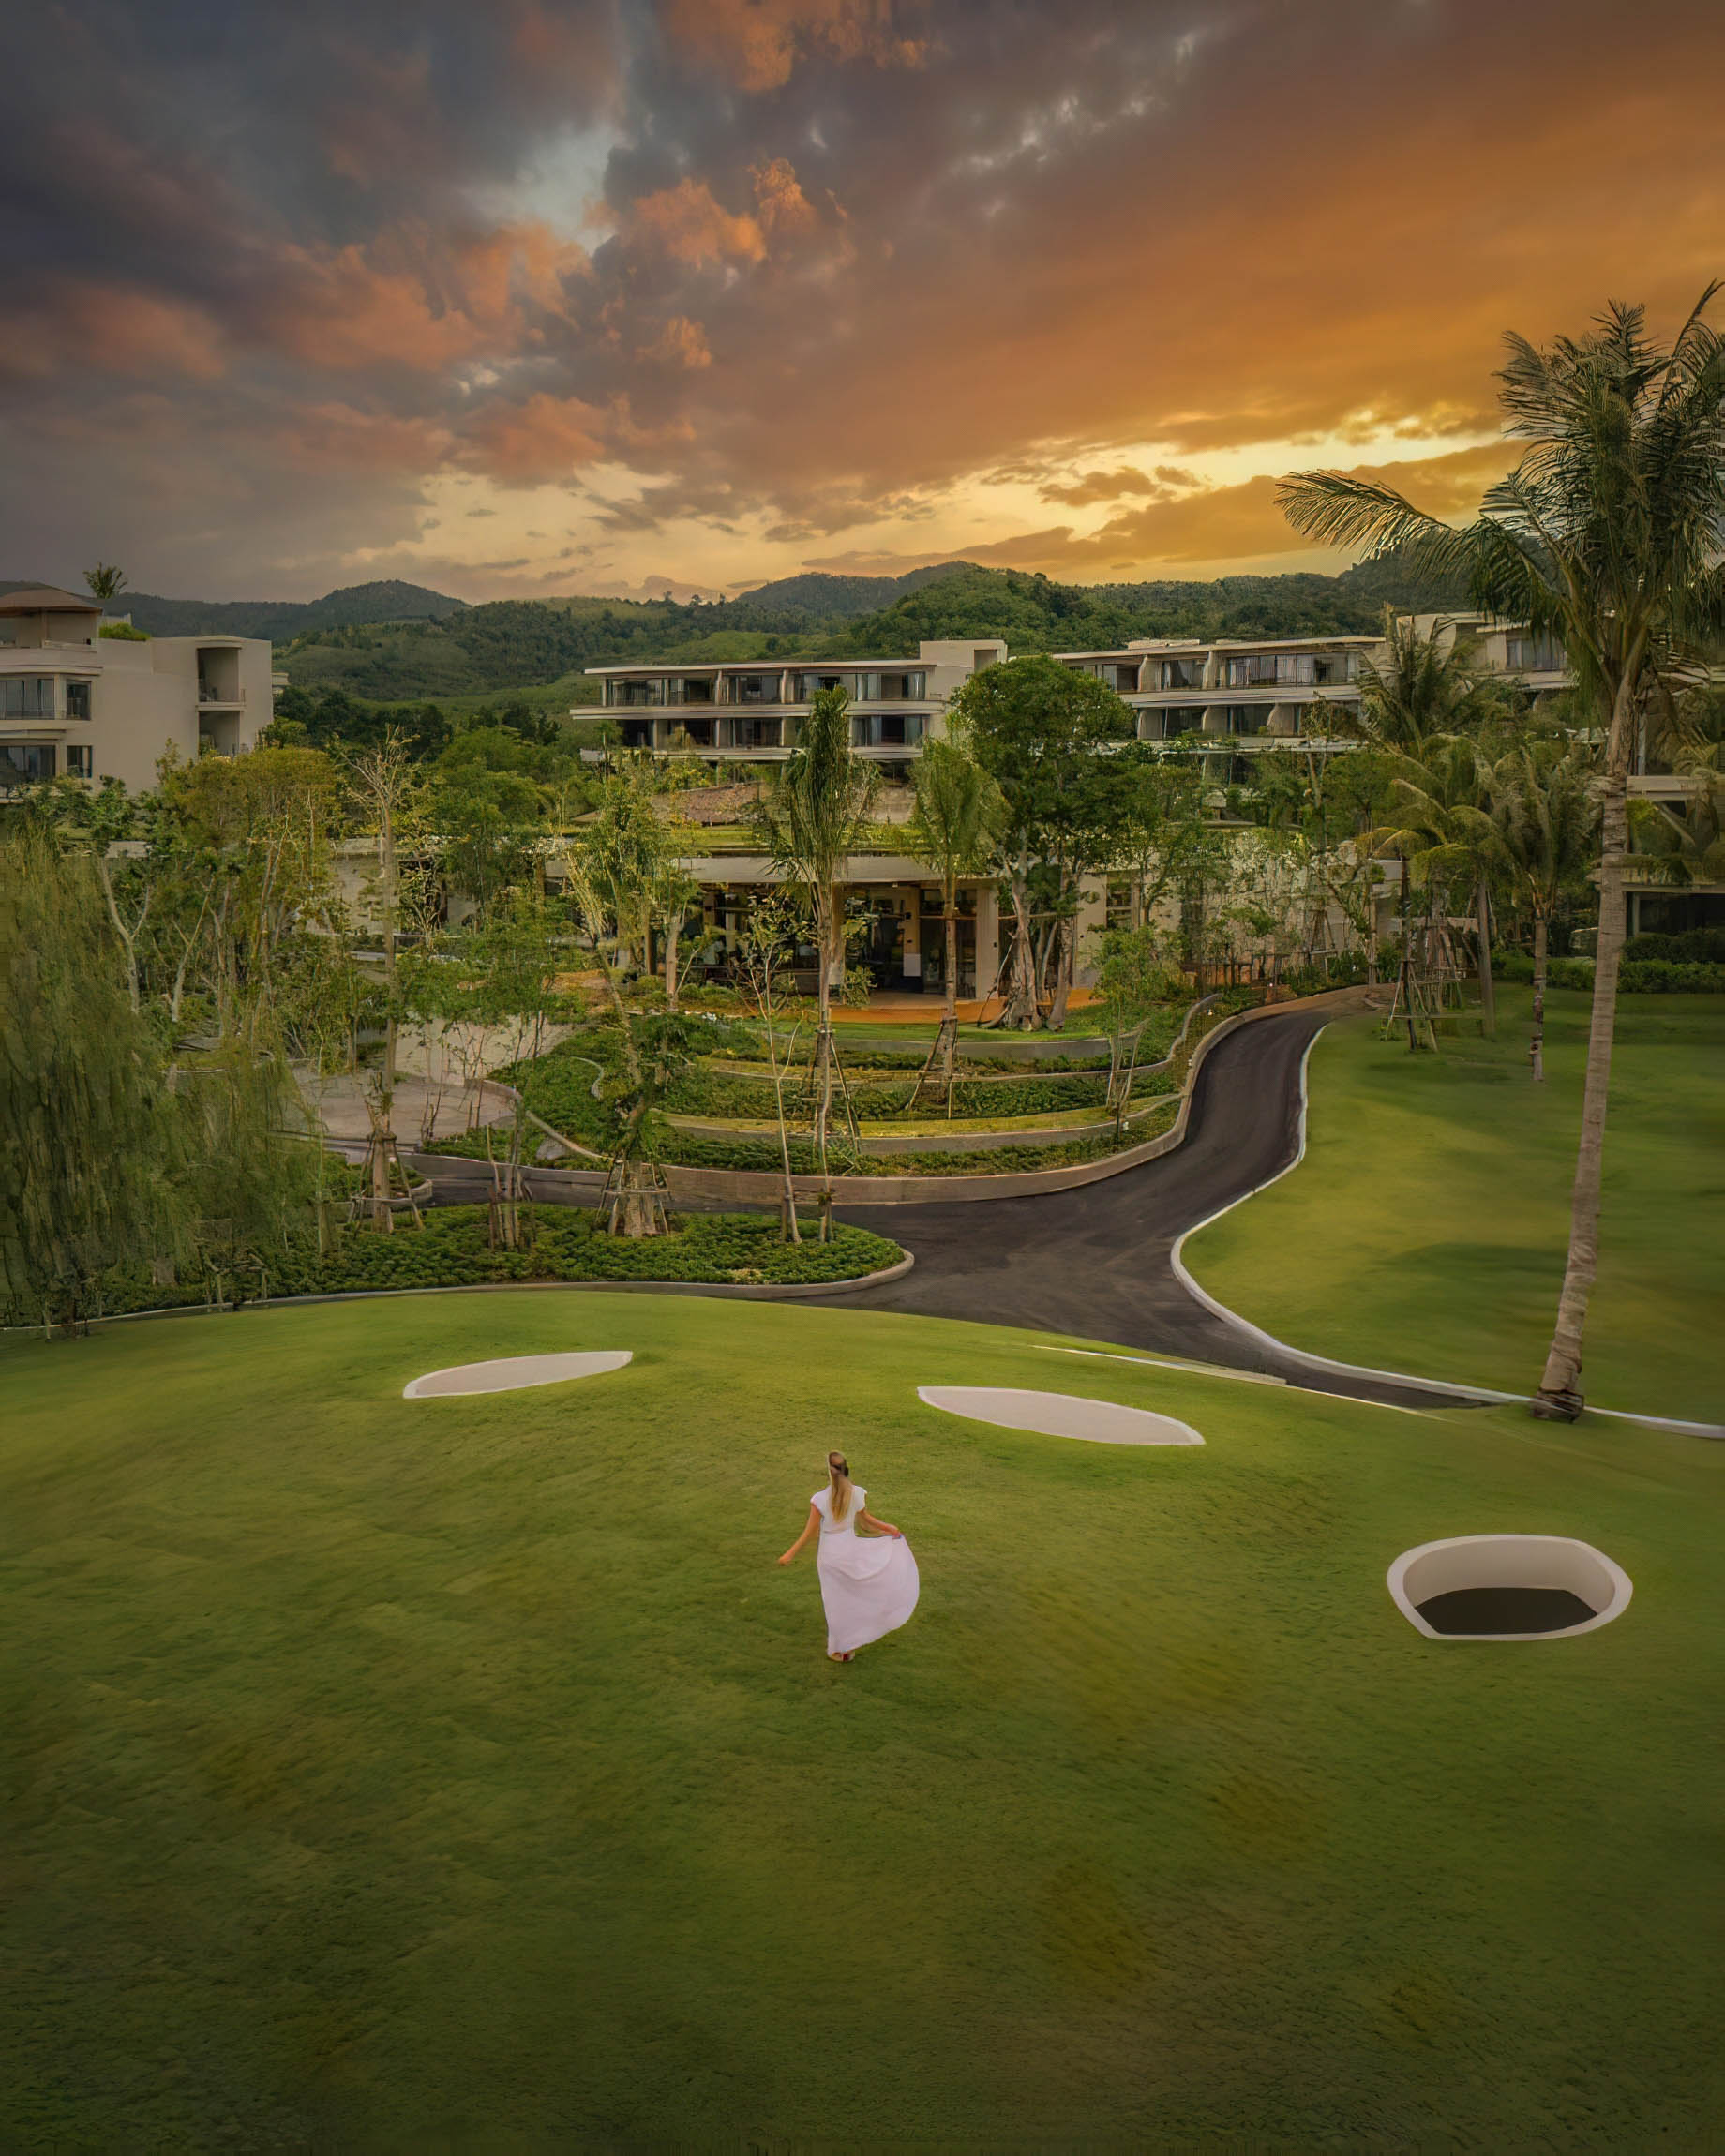 Anantara Koh Yao Yai Resort & Villas – Phang-nga, Thailand – Sunset